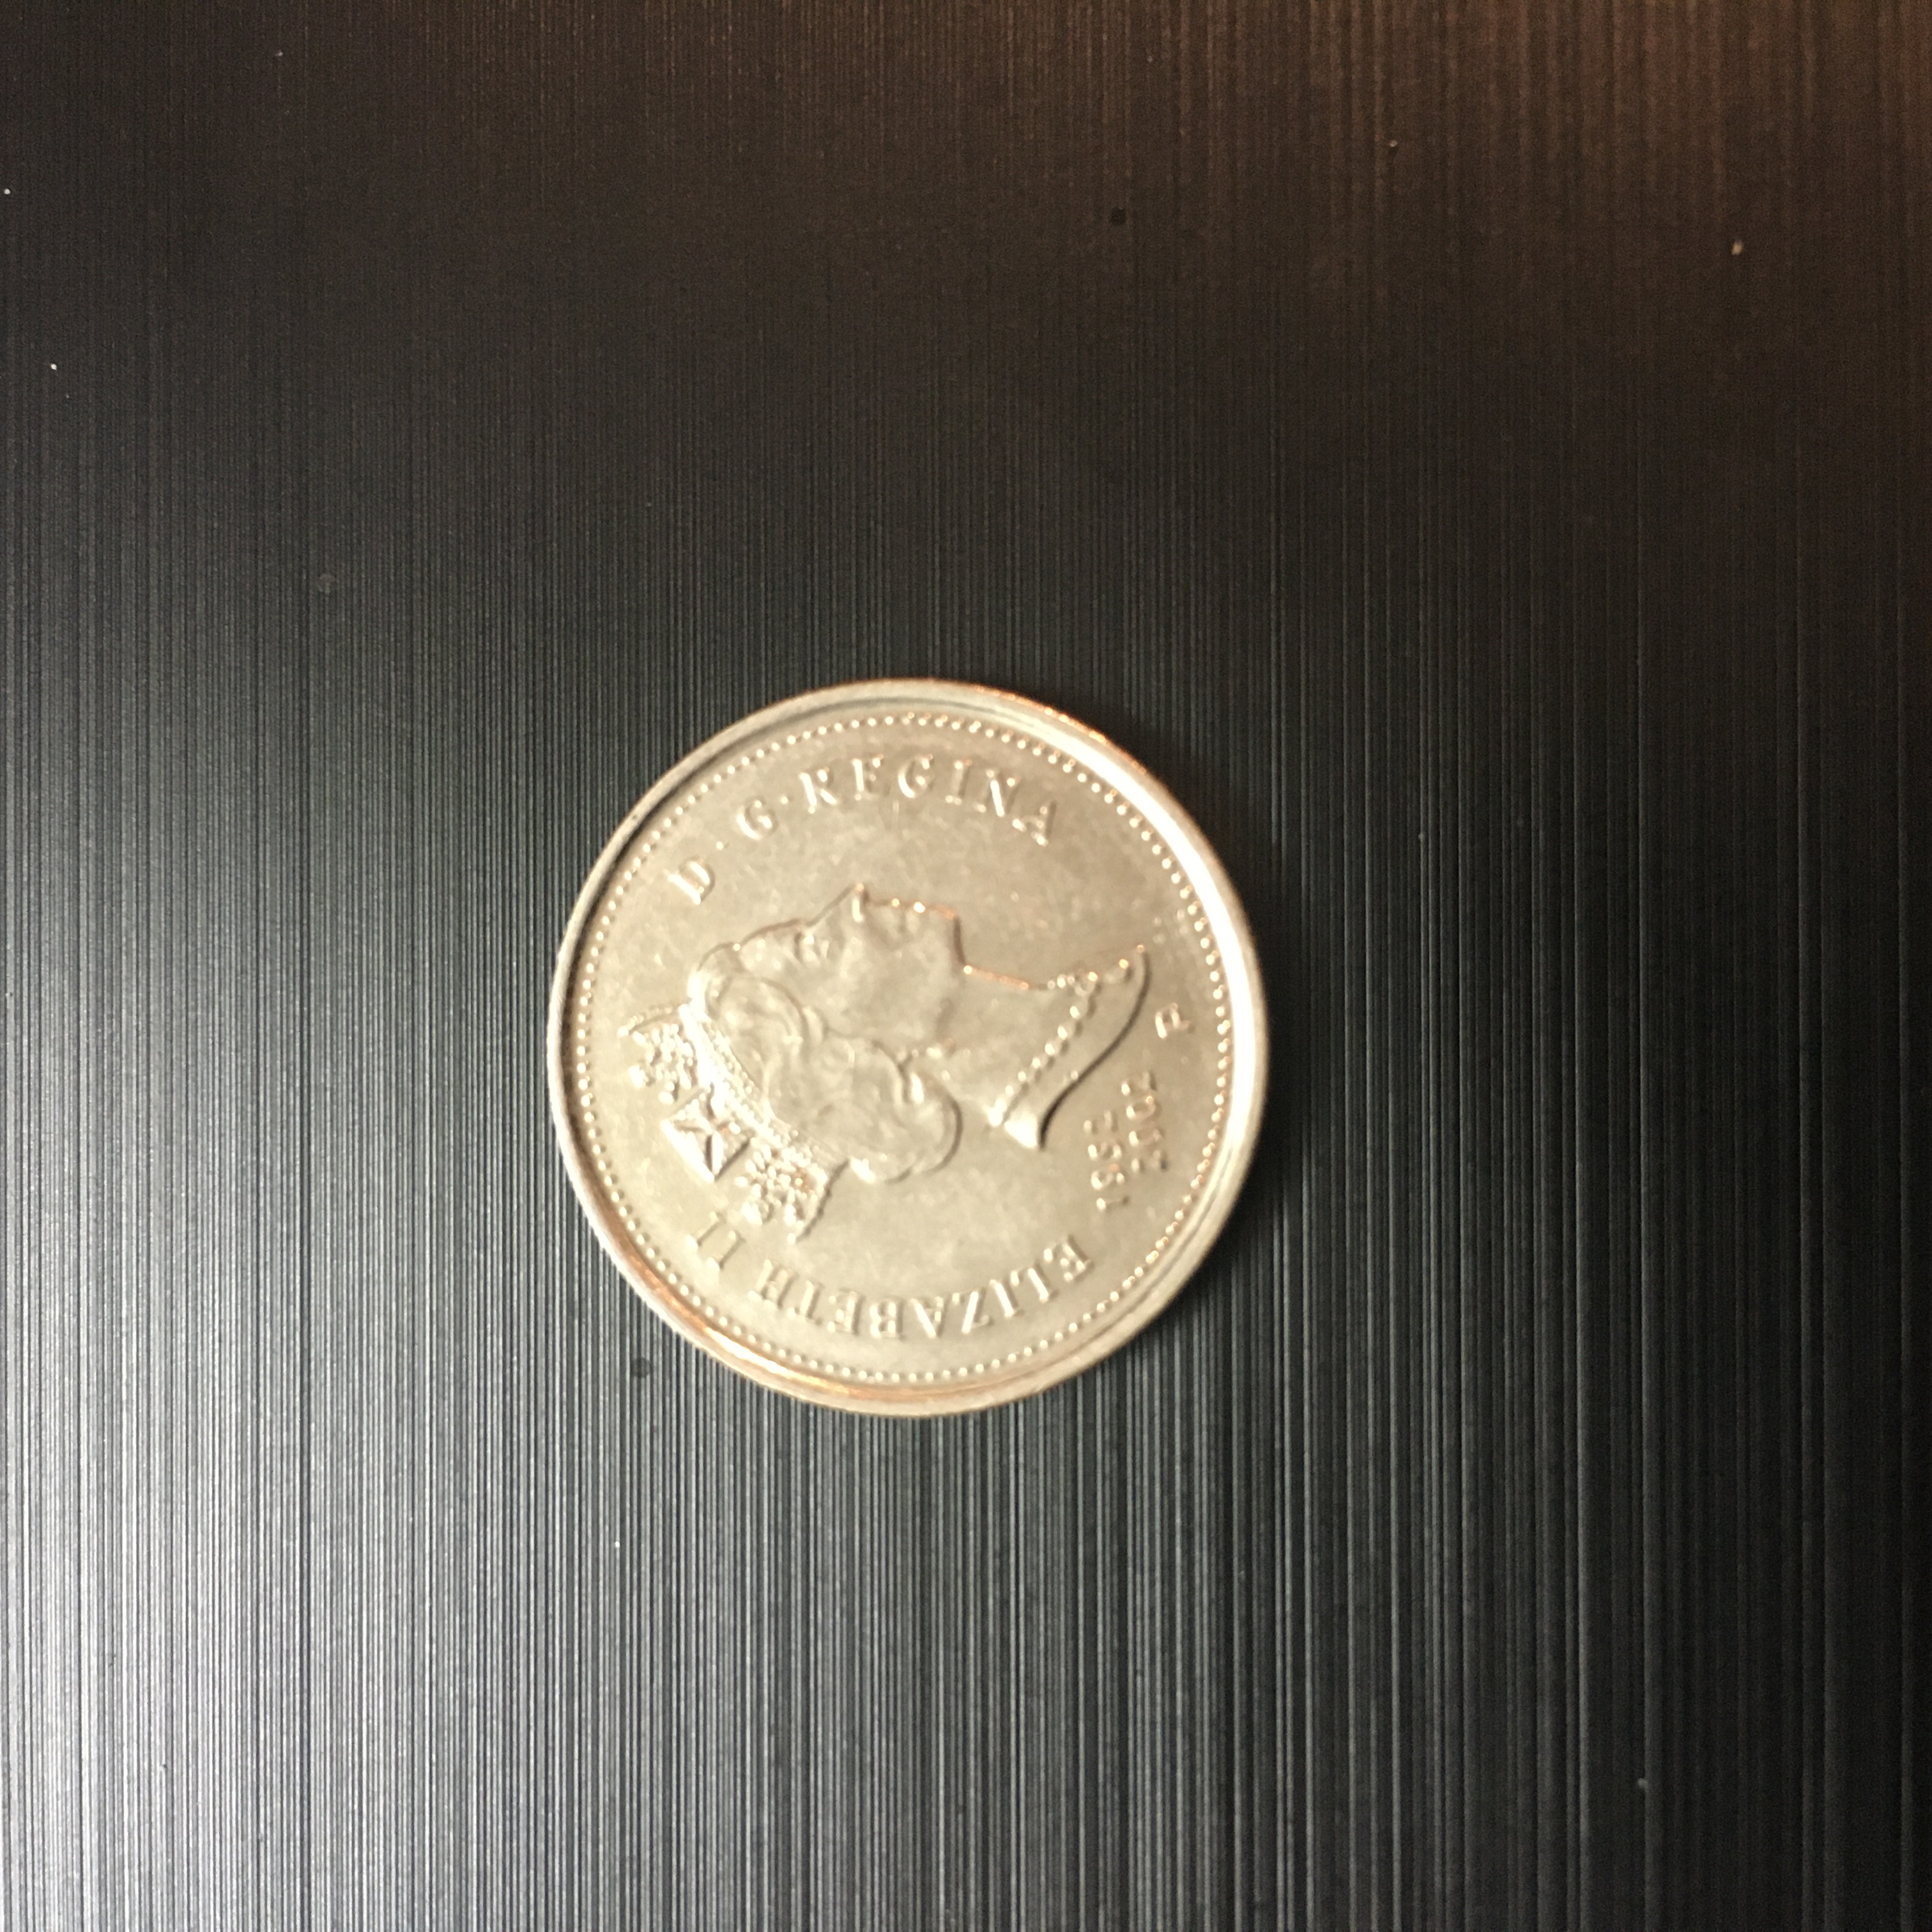 سکه خارجی ۵ سنت کانادا با تصویر ملکه انگلستان و کیفیت بانکی